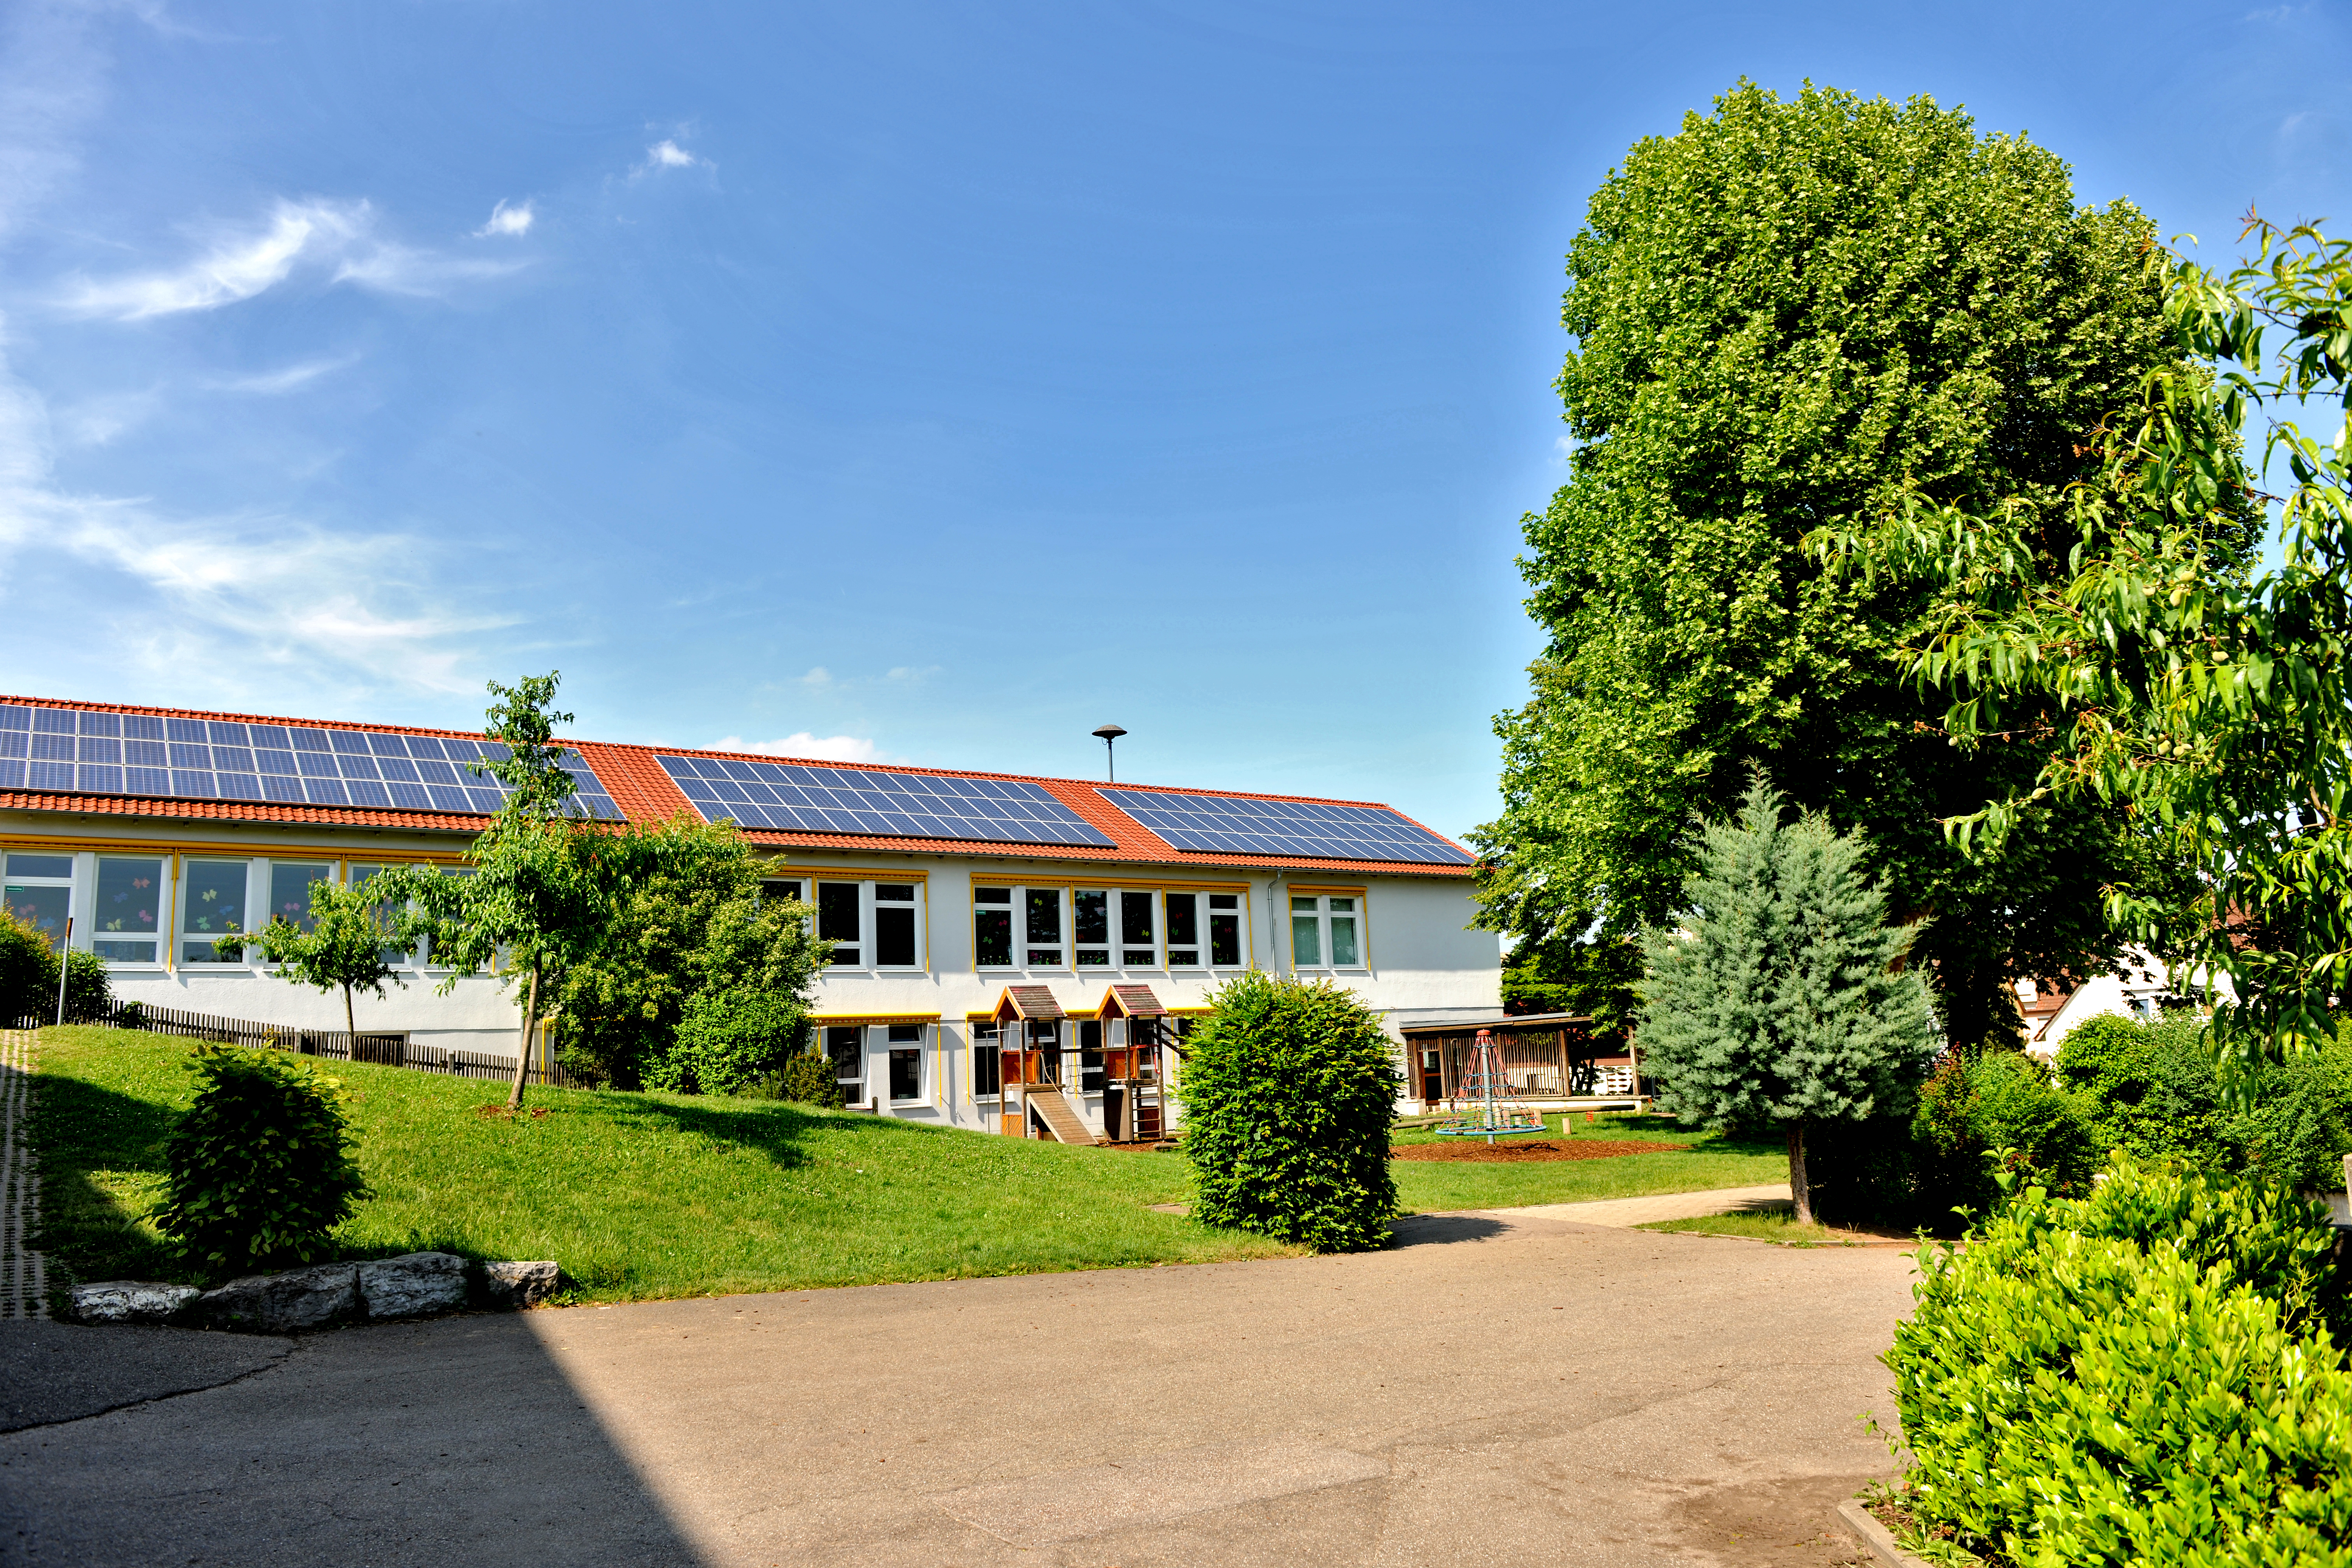  Schule am Baumbach, Grundschule 